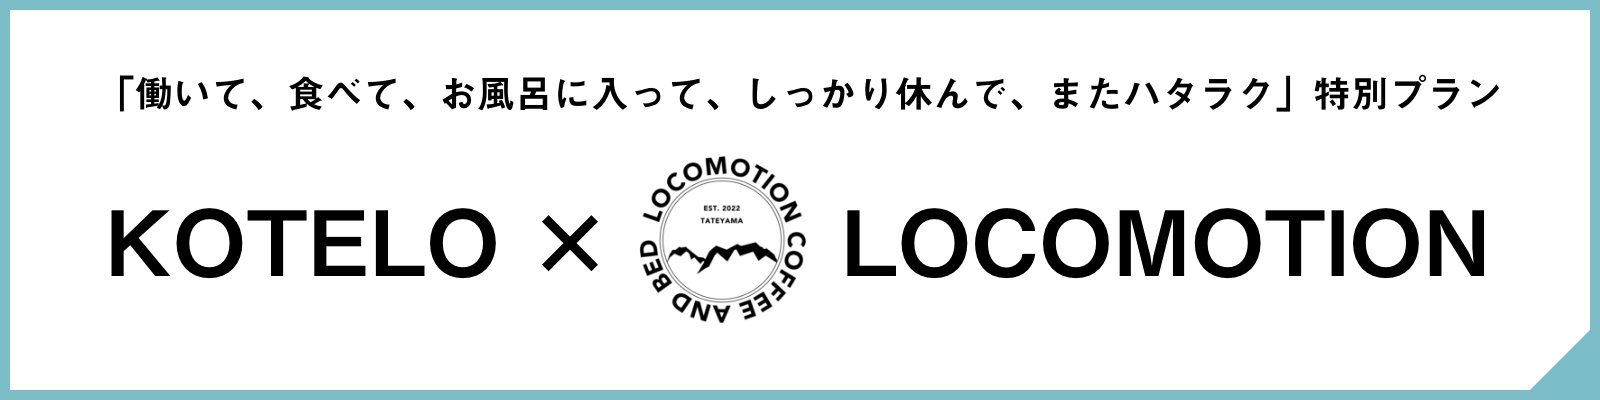 KOTELO × LOCOMOTION特別プラン